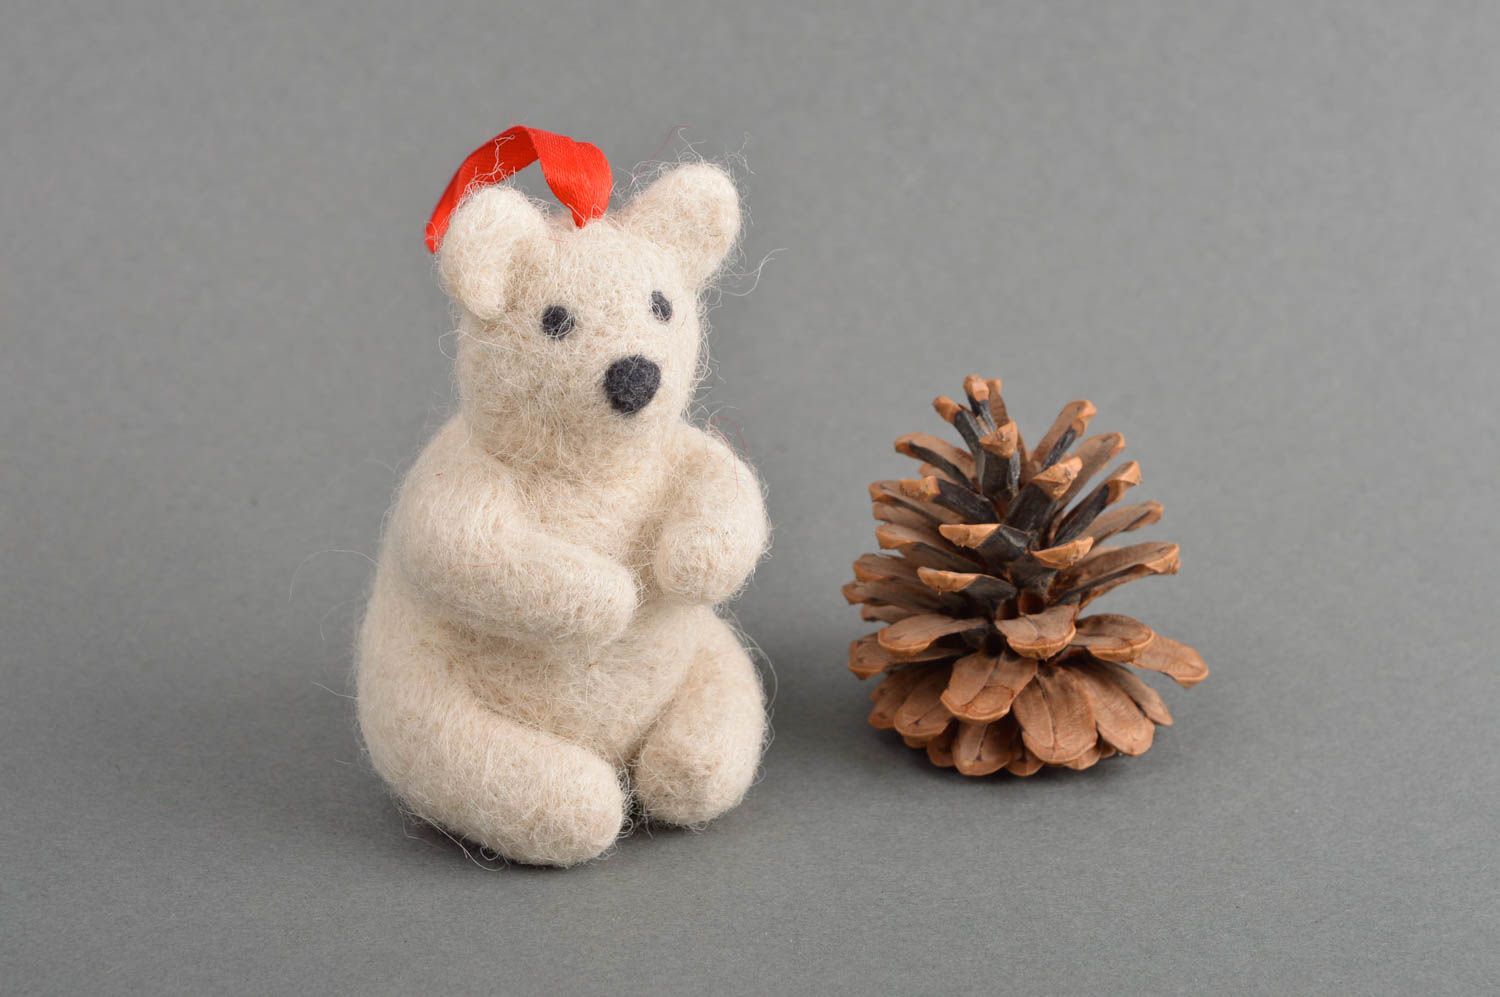 Handmade toy gift ideas designer toy for children woolen toy for nursery decor photo 1